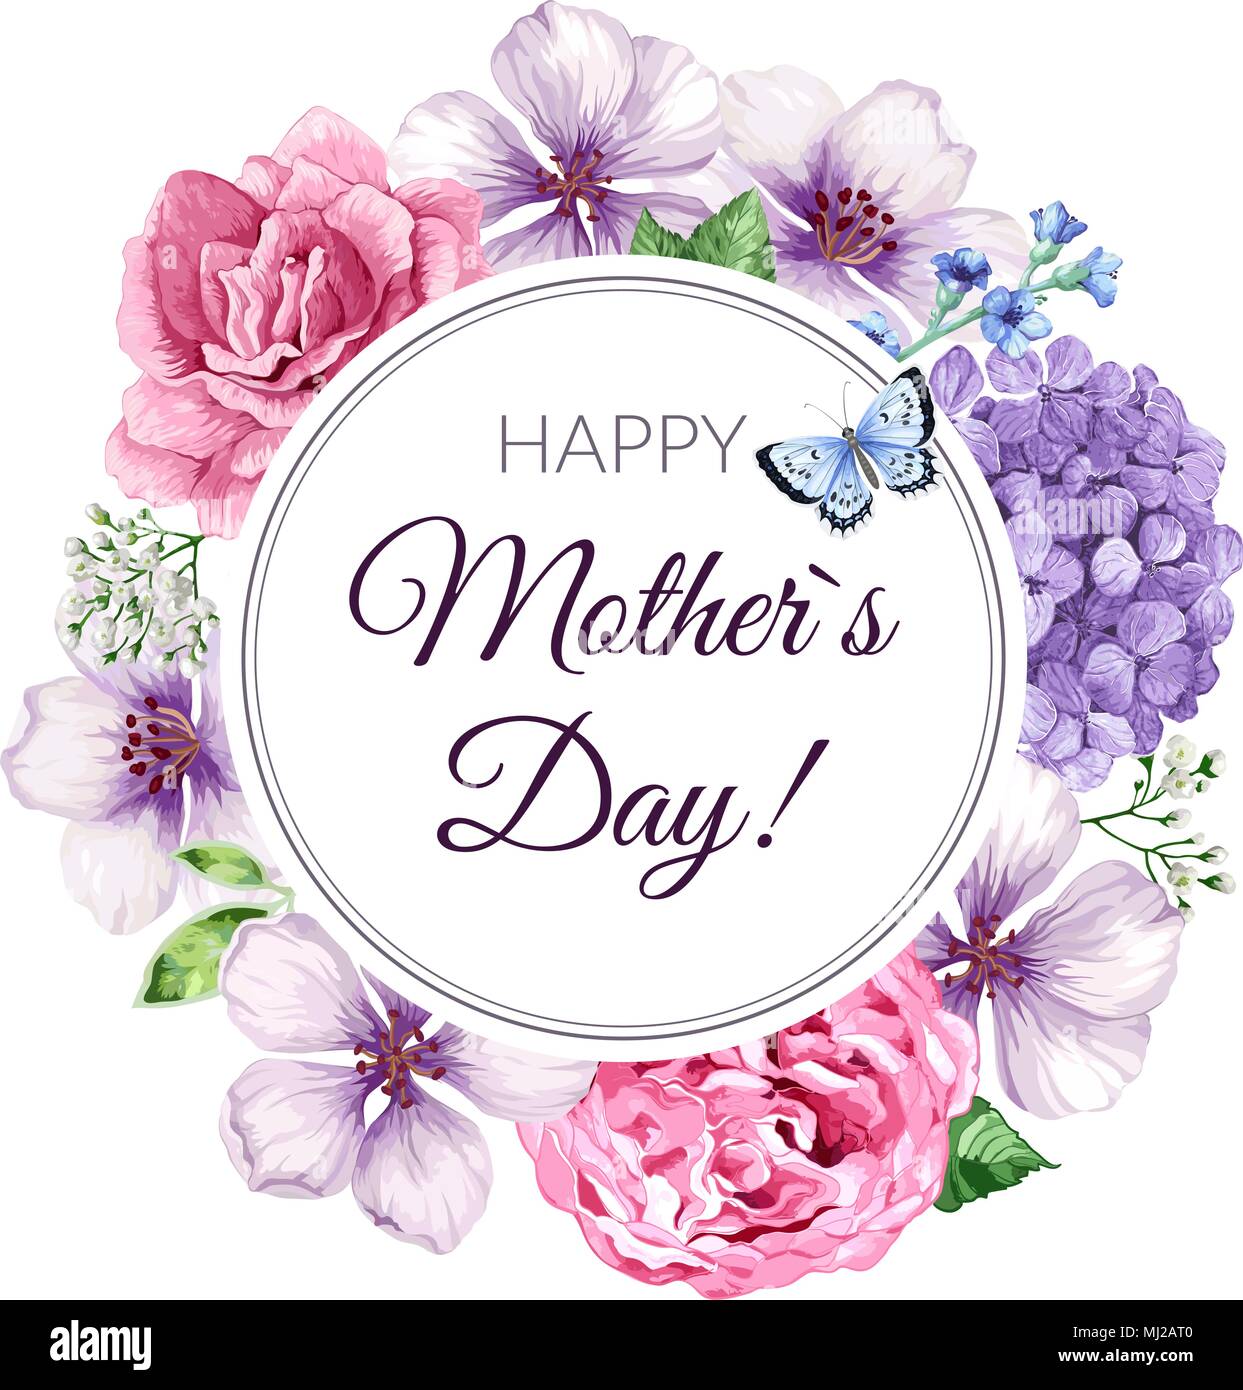 Mỗi ngày của mẹ đều là một ngày trân quý và đáng nhớ nhất. Hãy cùng chúng tôi ăn mừng ngày của mẹ với những hình ảnh đong đầy tình yêu và sự kính trọng dành cho người phụ nữ uyên bác nhất trong đời bạn.